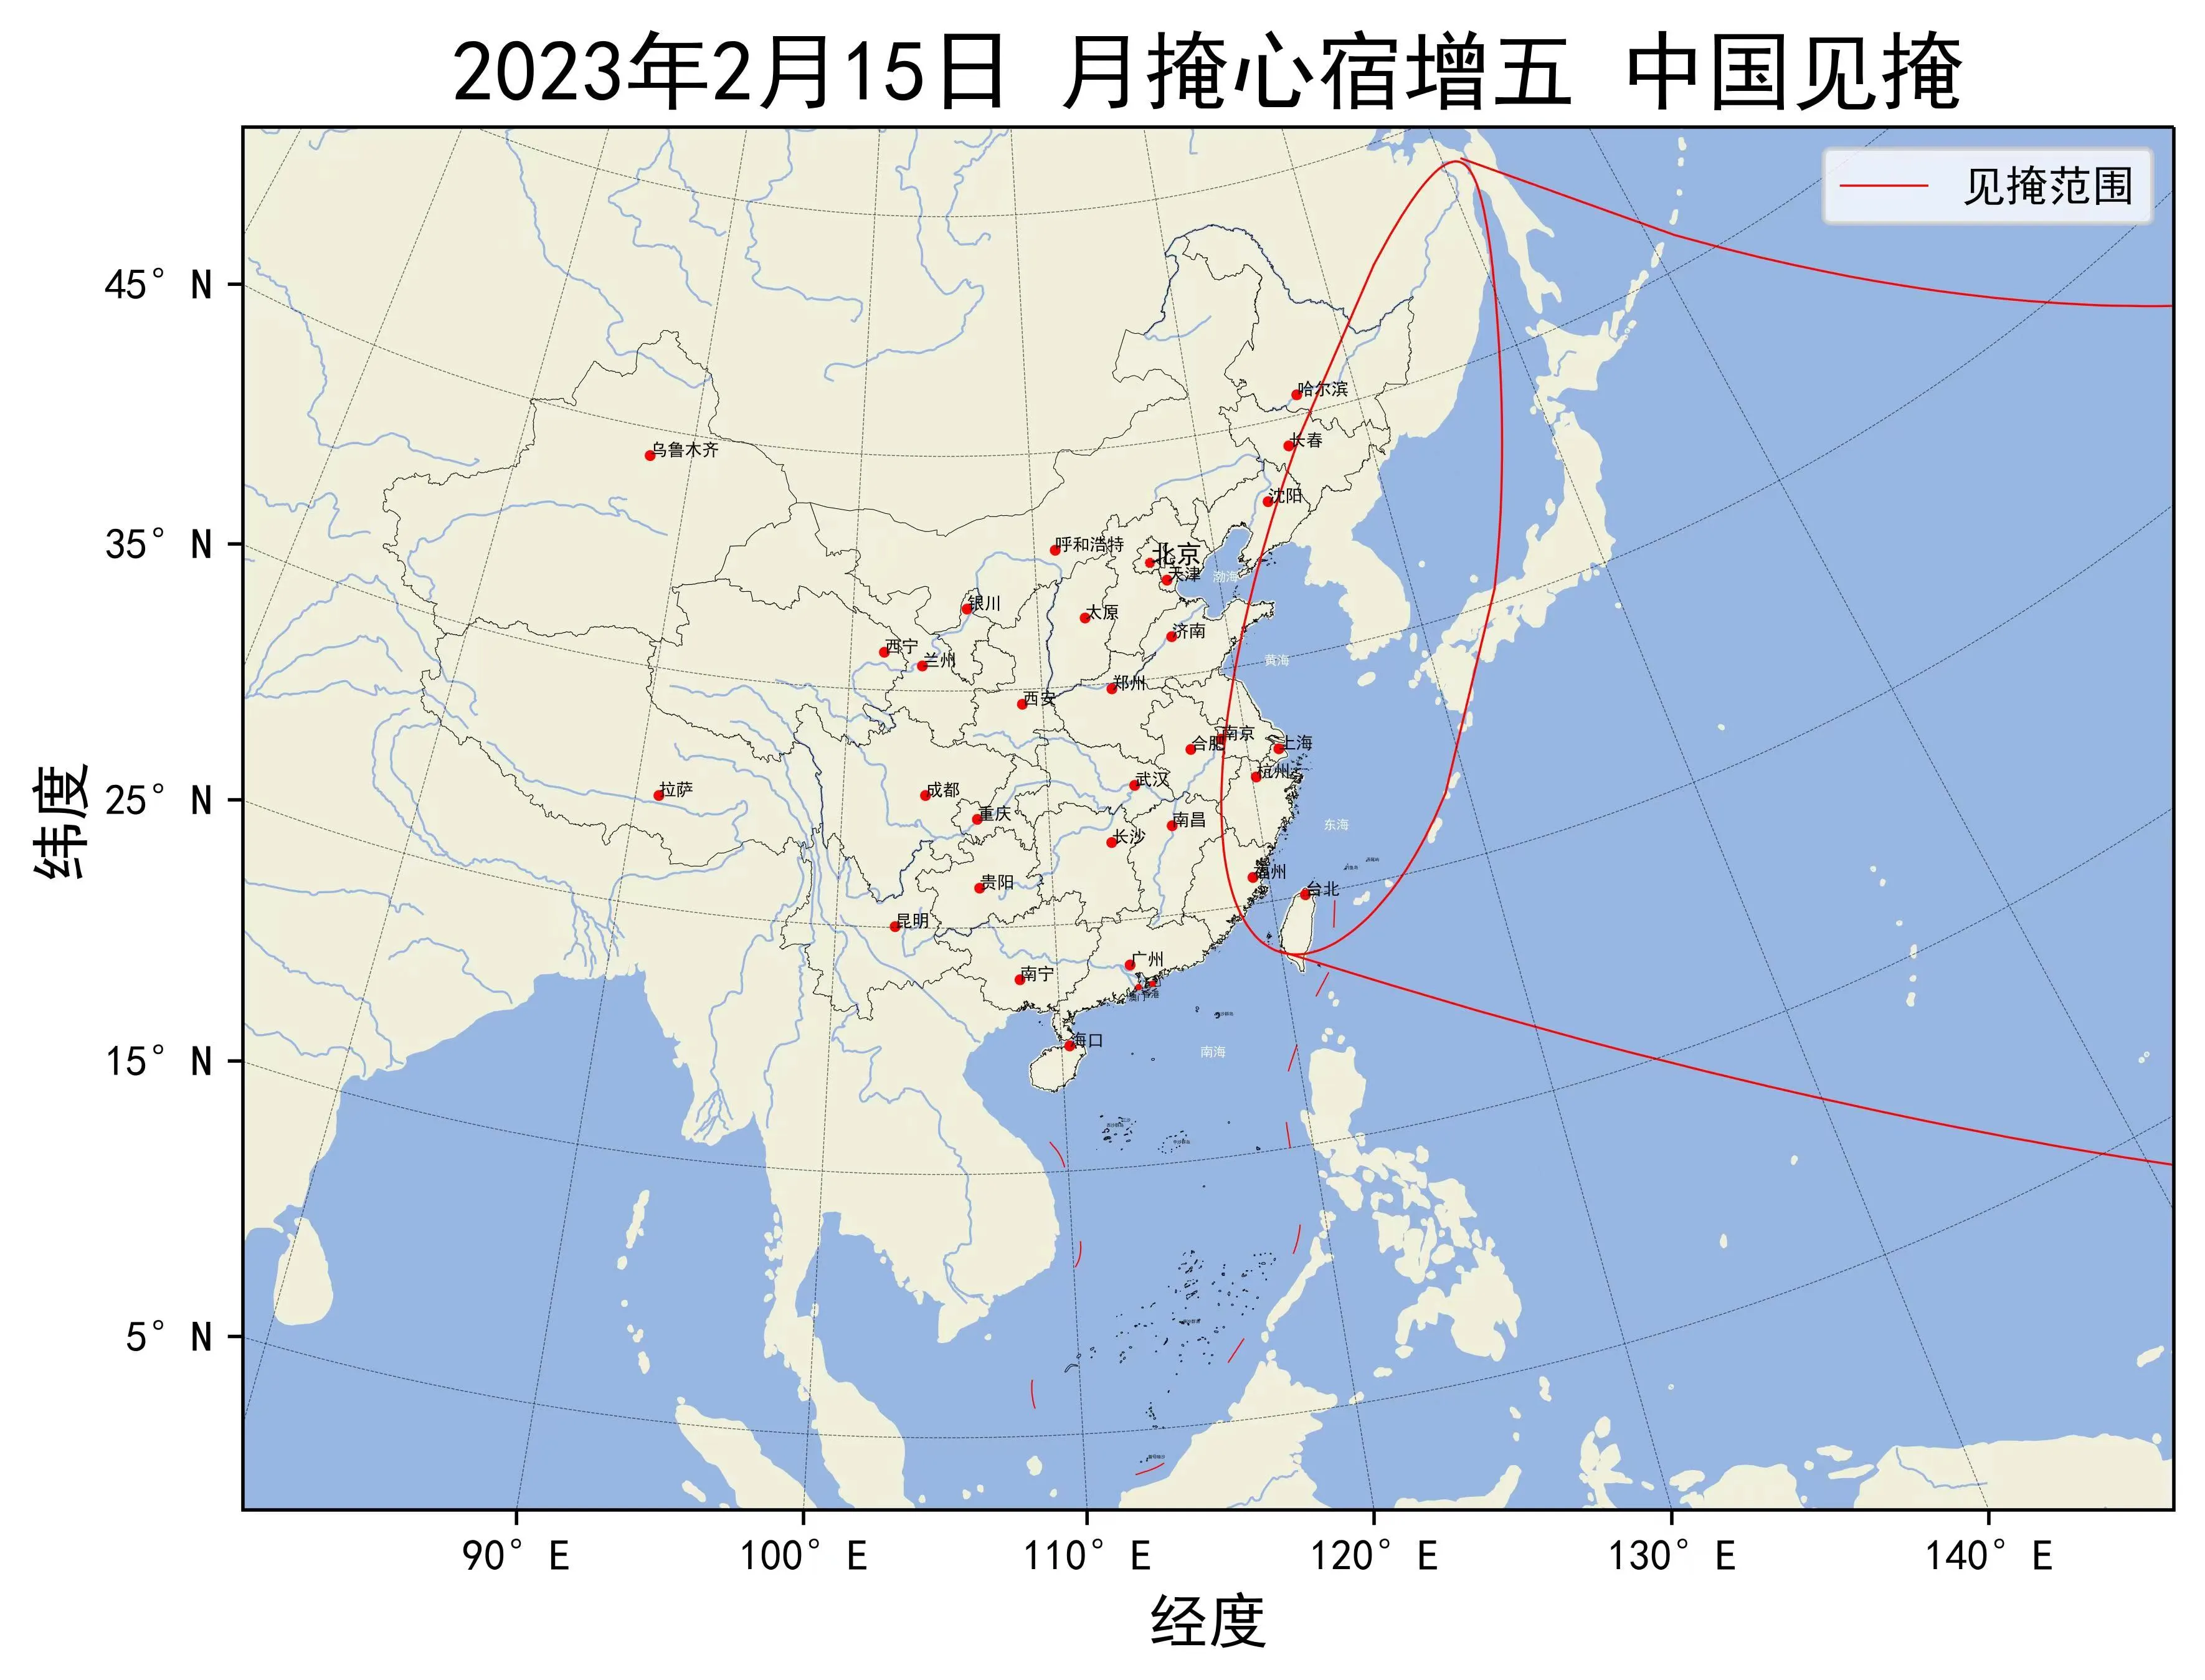 2023年2月15日月掩心宿增五中国见掩